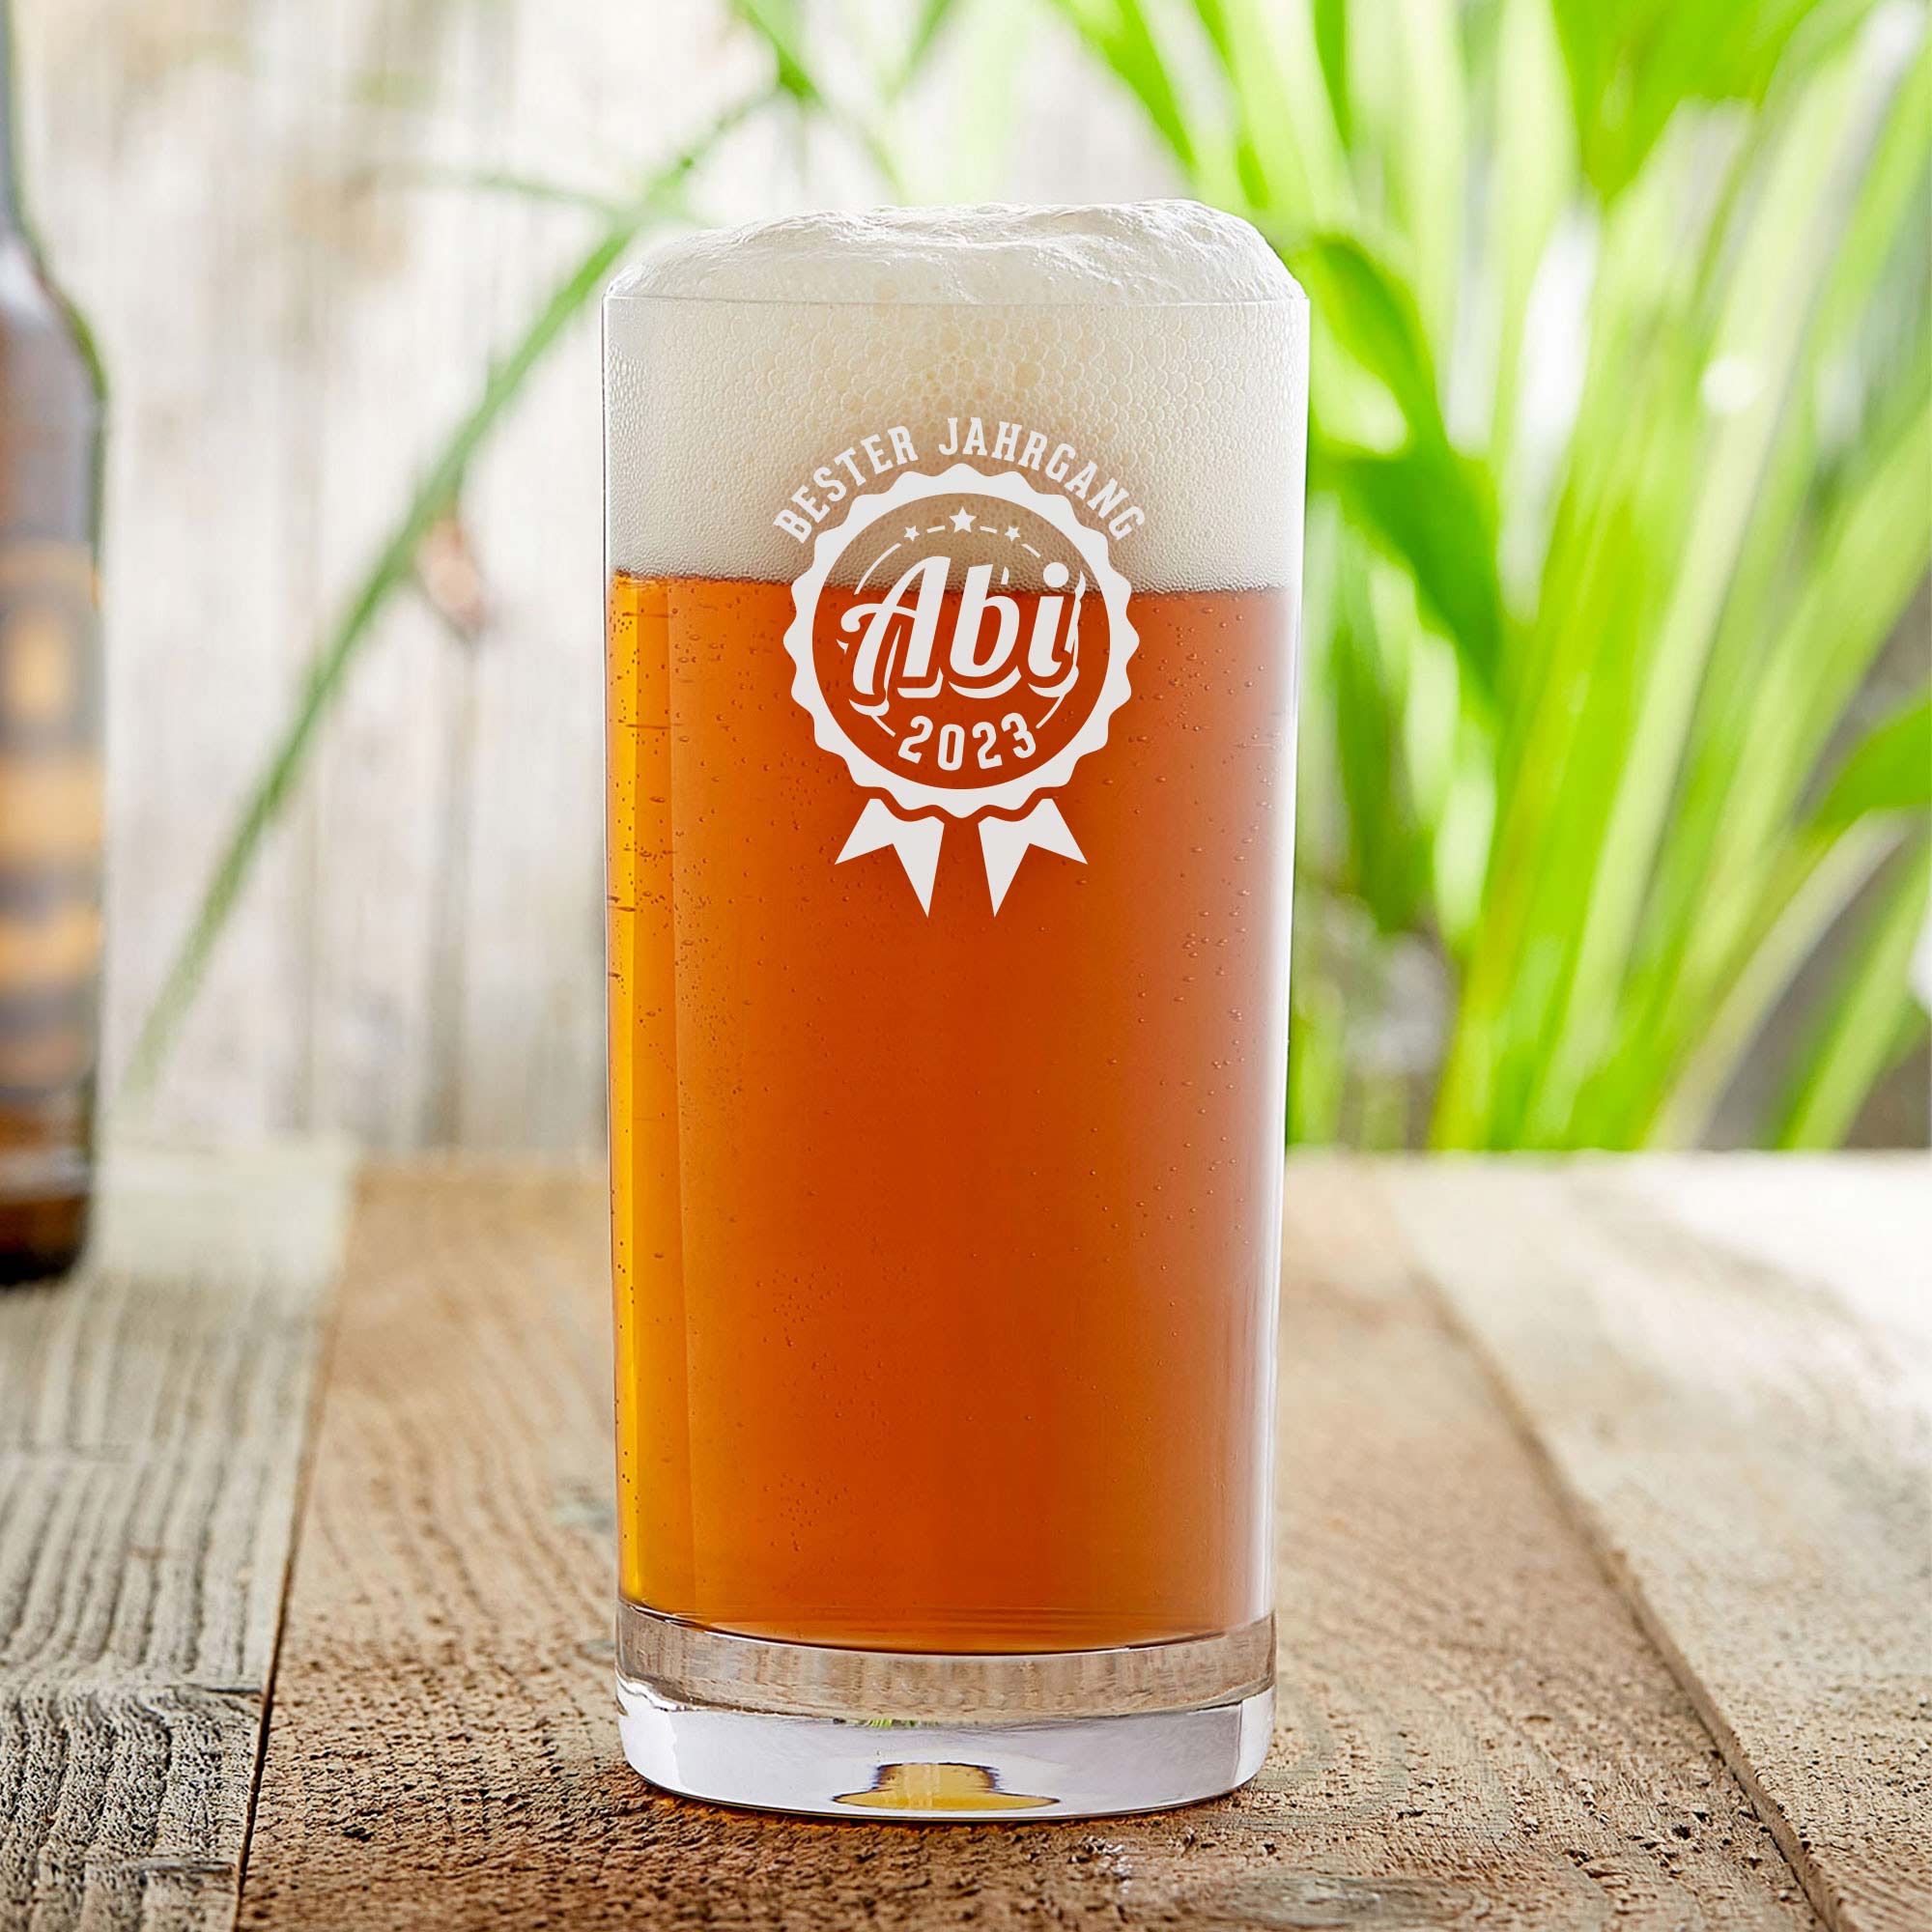 Craft Bier Glas mit Gravur - Abitur Jahrgang - Standard